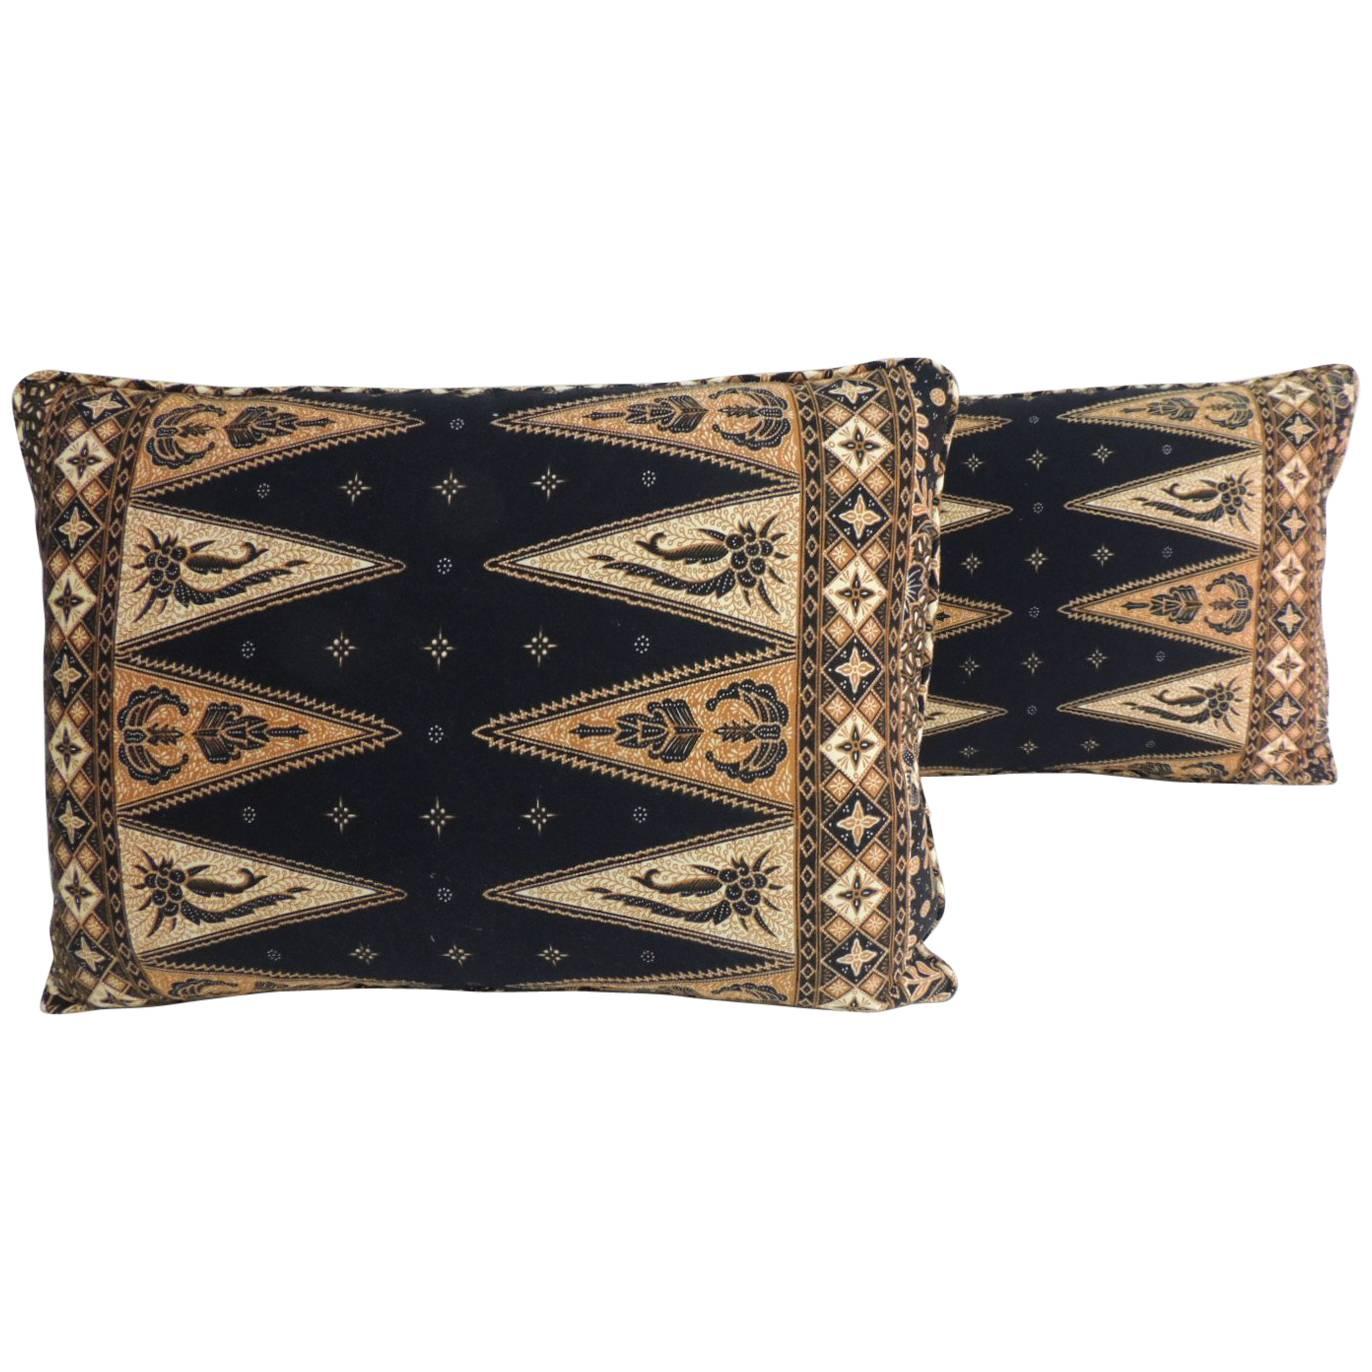 Pair of Vintage Black and Gold Batik Lumbar Decorative Pillows